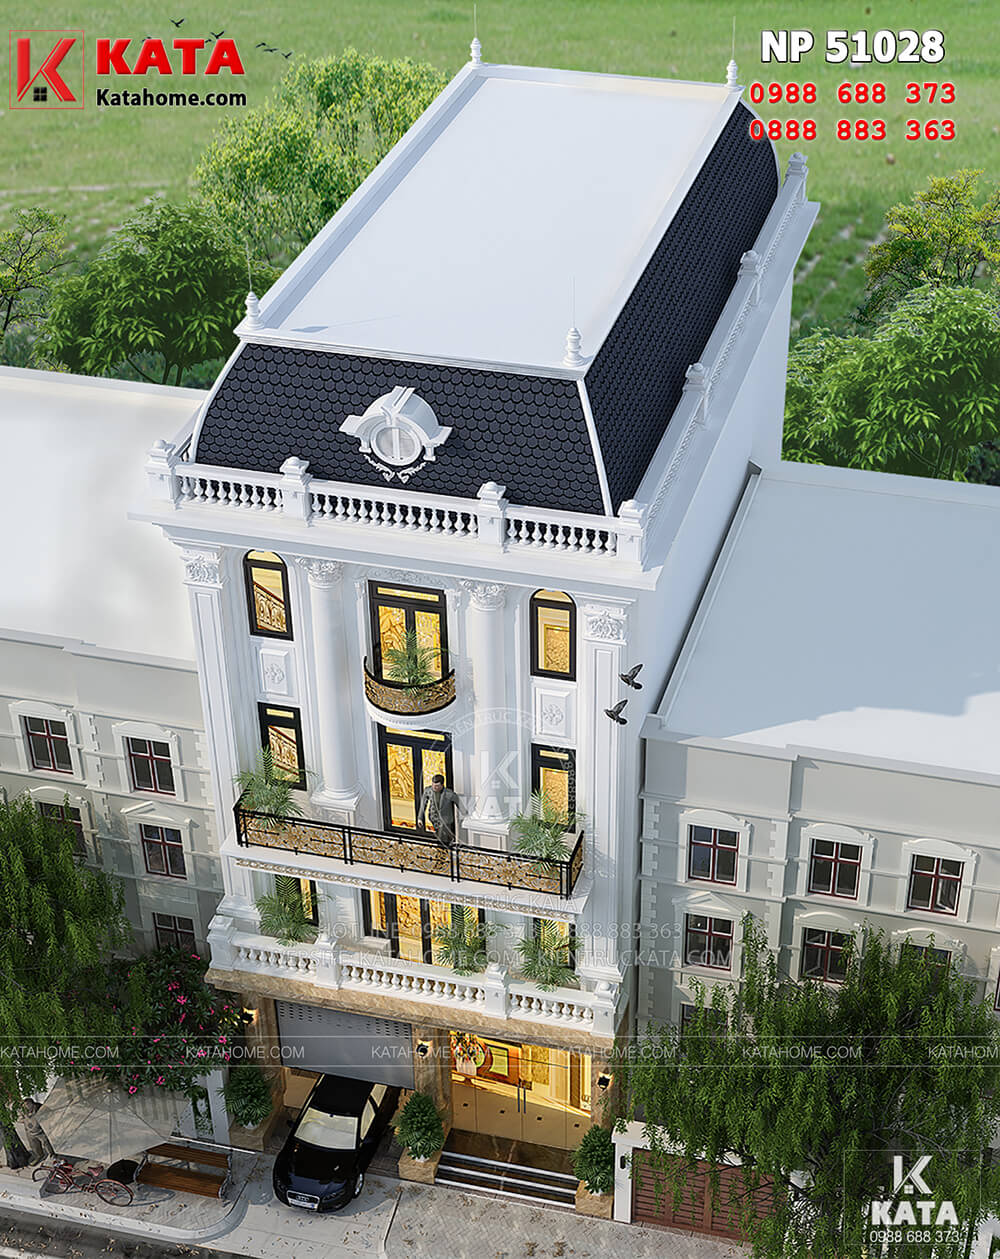 Không gian ngoại thất của mẫu thiết kế khách sạn nhà phố mang phong cách kiến trúc tân cổ điển 5 tầng - Mã số: NP 51028